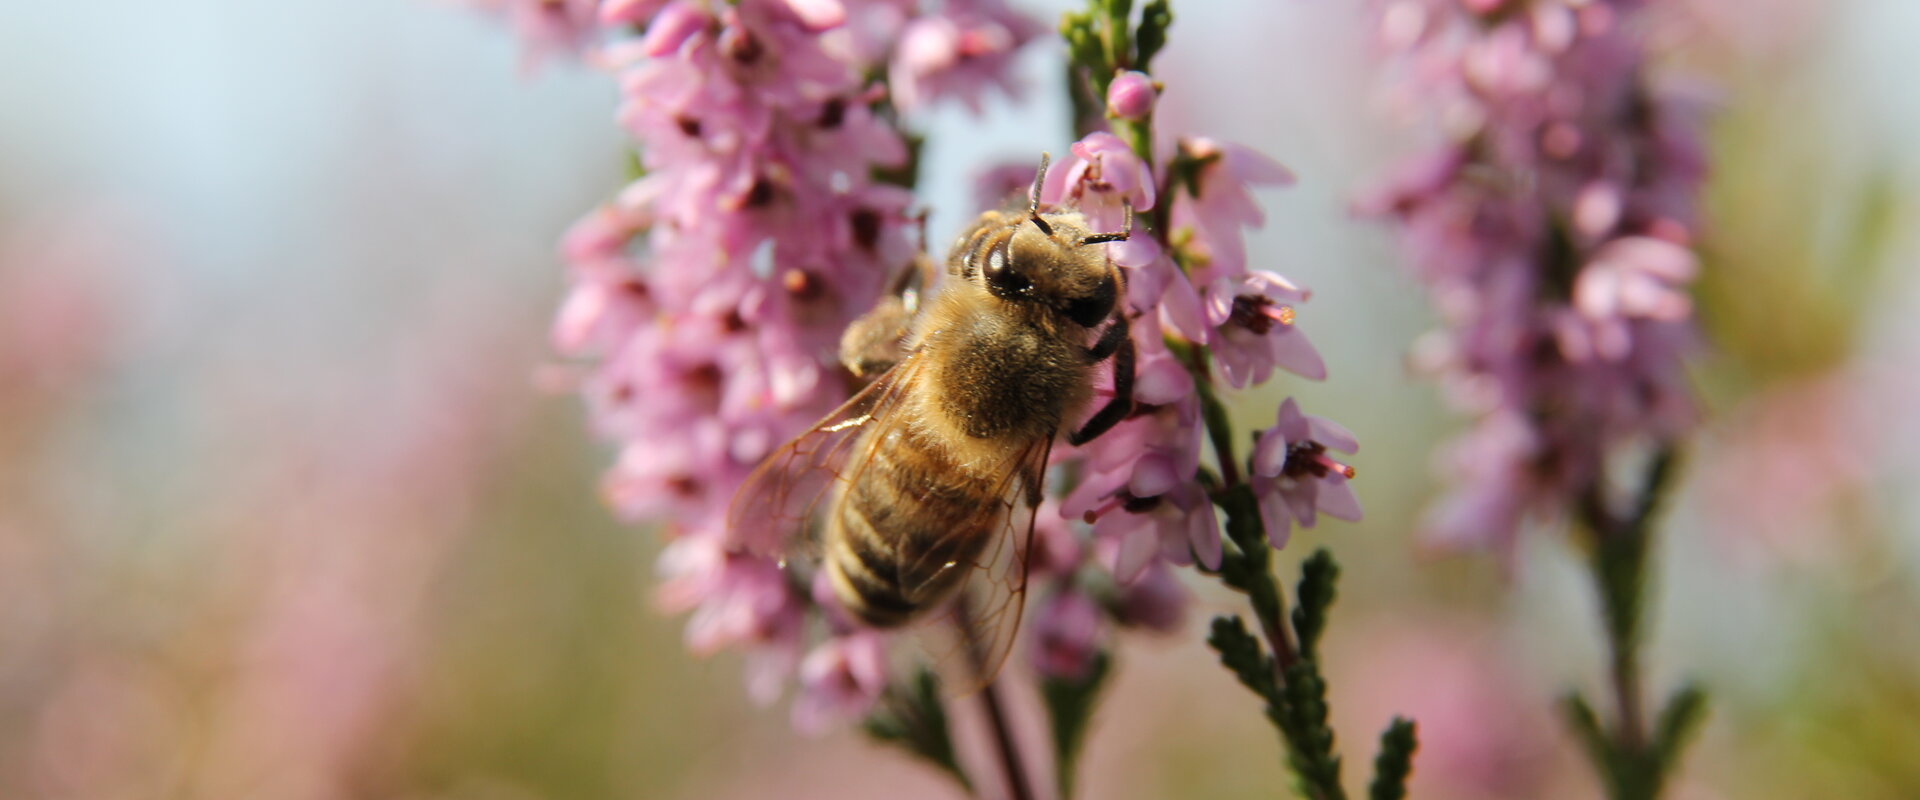 Nahaufnahme einer Honigbiene, die an einer blühenden Heidepflanze (Calluna vulgaris) Nektar sammelt